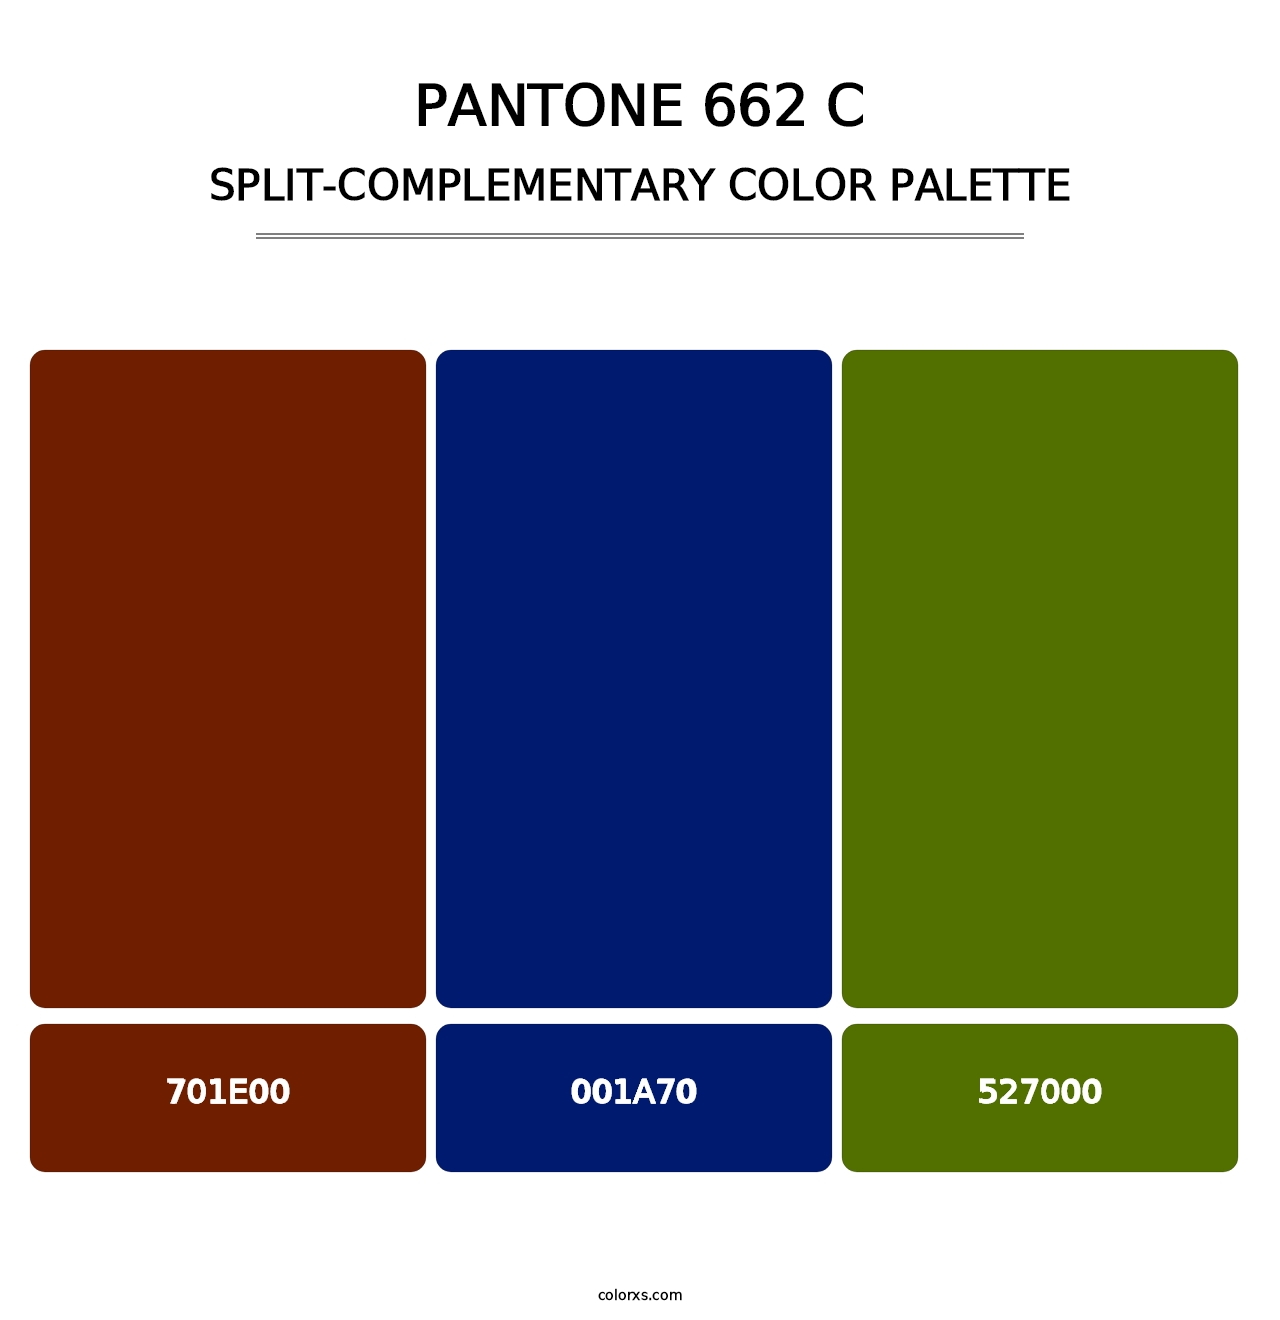 PANTONE 662 C - Split-Complementary Color Palette